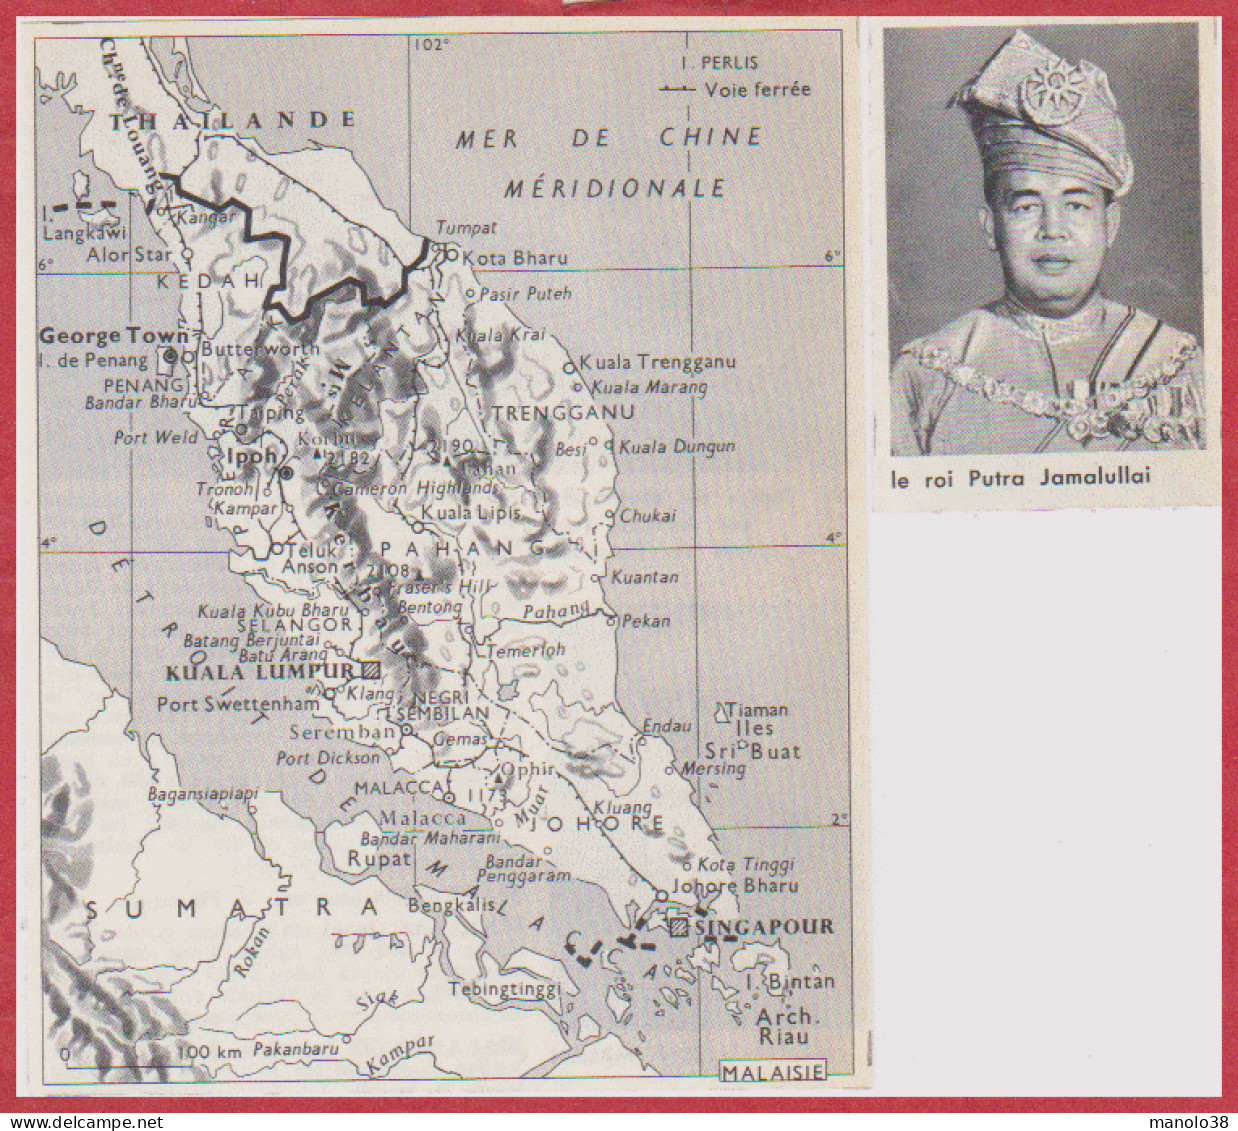 Carte De La Malaisie. Carte Avec Voie Ferrée. Le Roi Putra Jamalullai. Larousse 1960. - Historical Documents